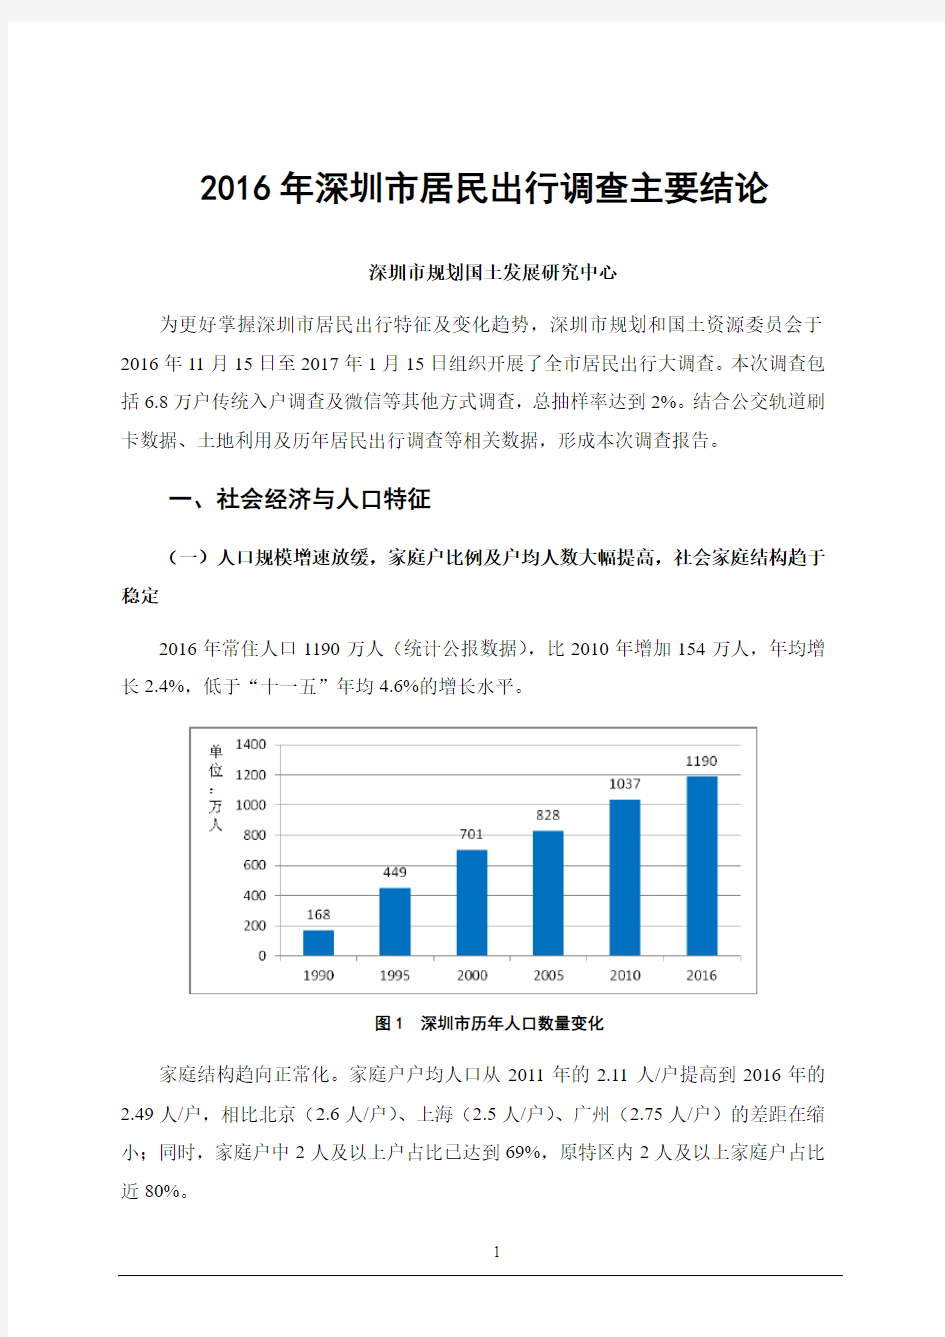 2016年深圳居民出行调查主要结论